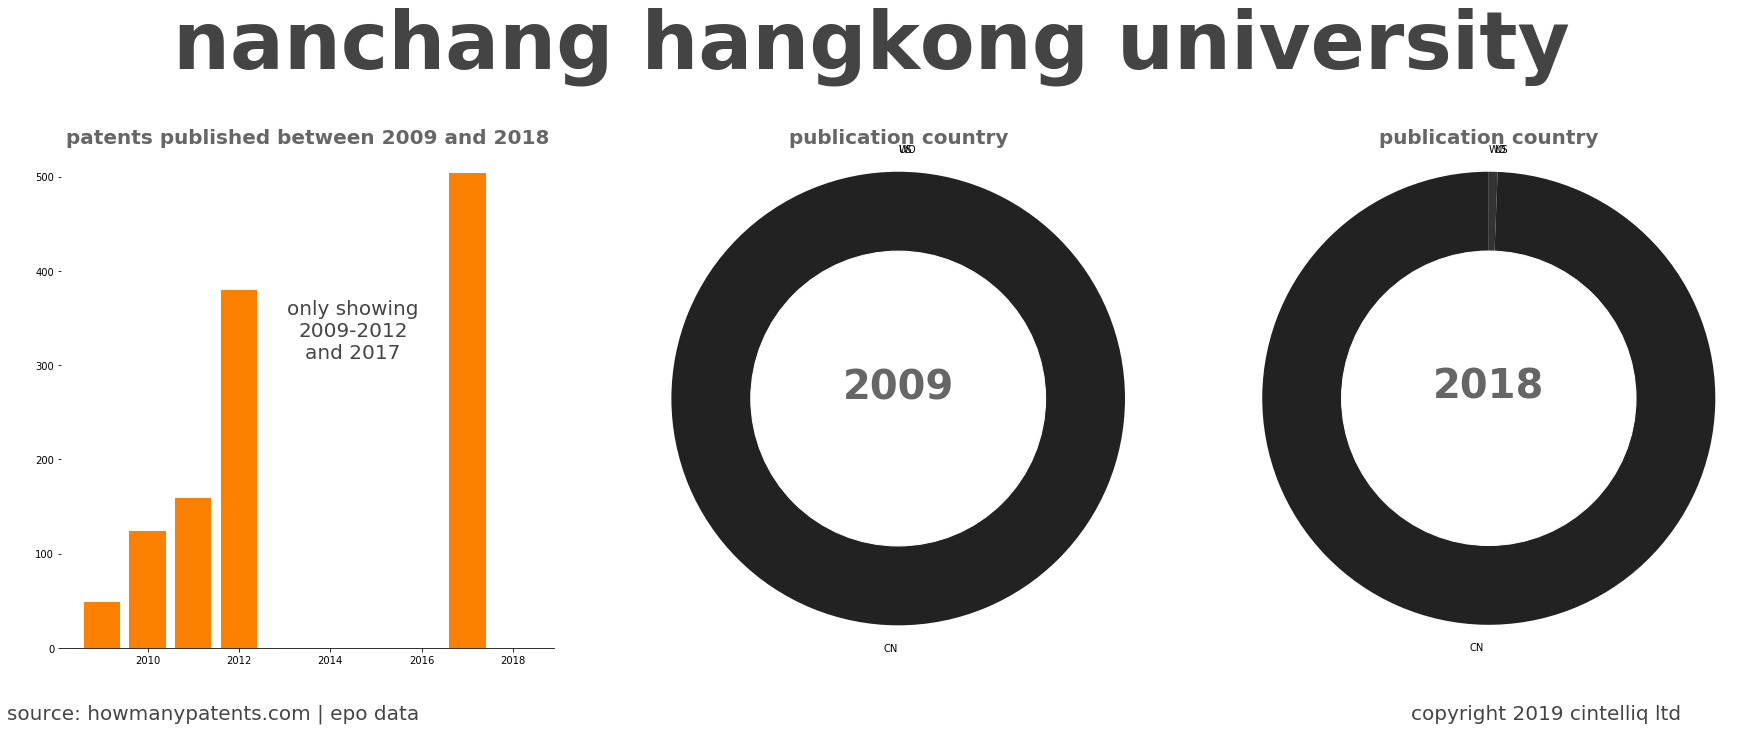 summary of patents for Nanchang Hangkong University